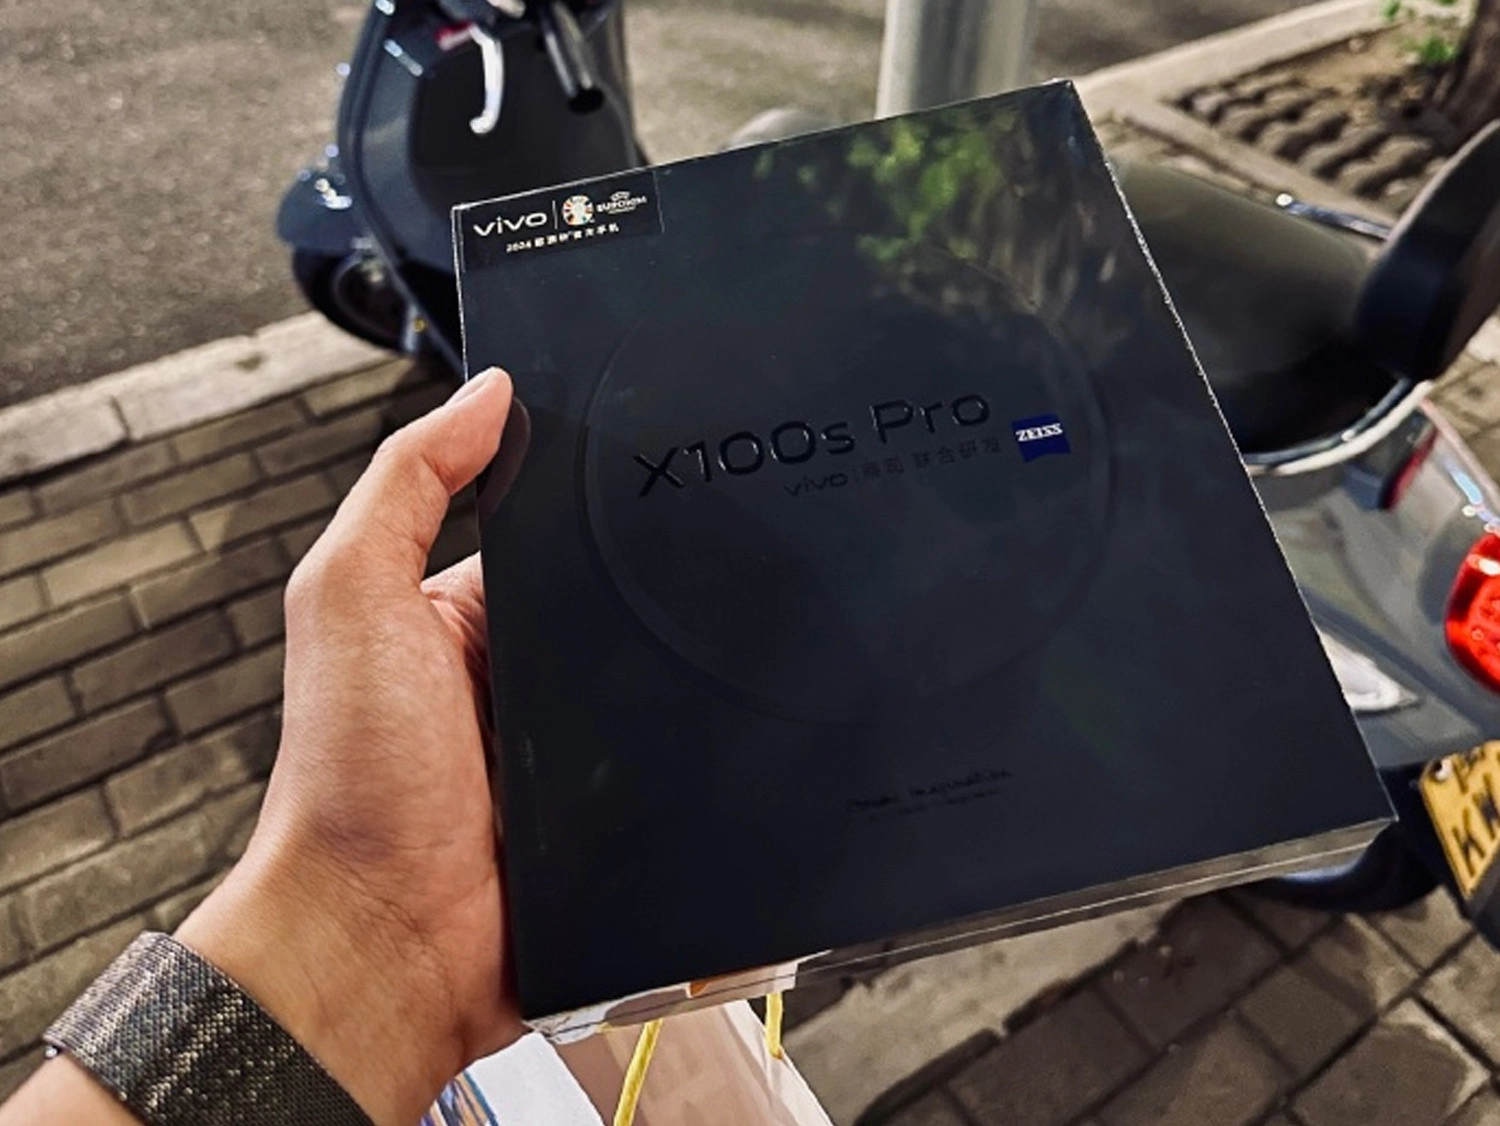 Thiết kế hộp đựng Vivo X100s Pro